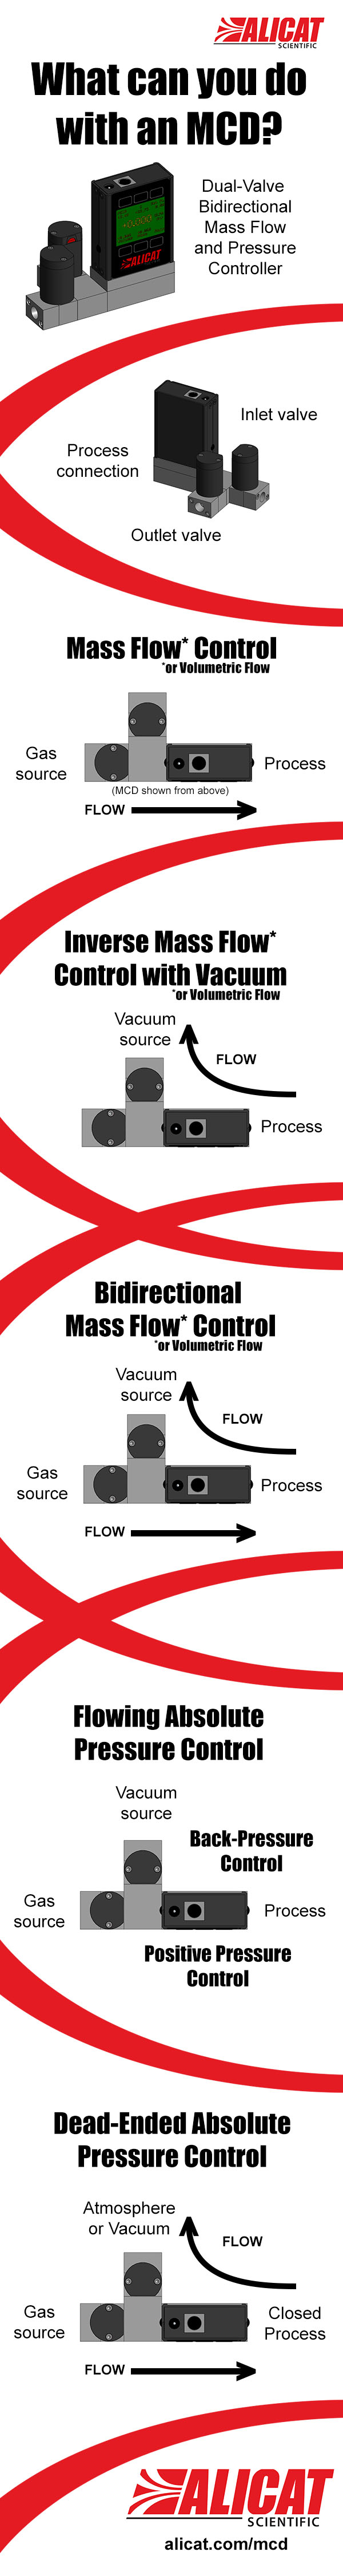 Alicat MCD mass flow controller infographic